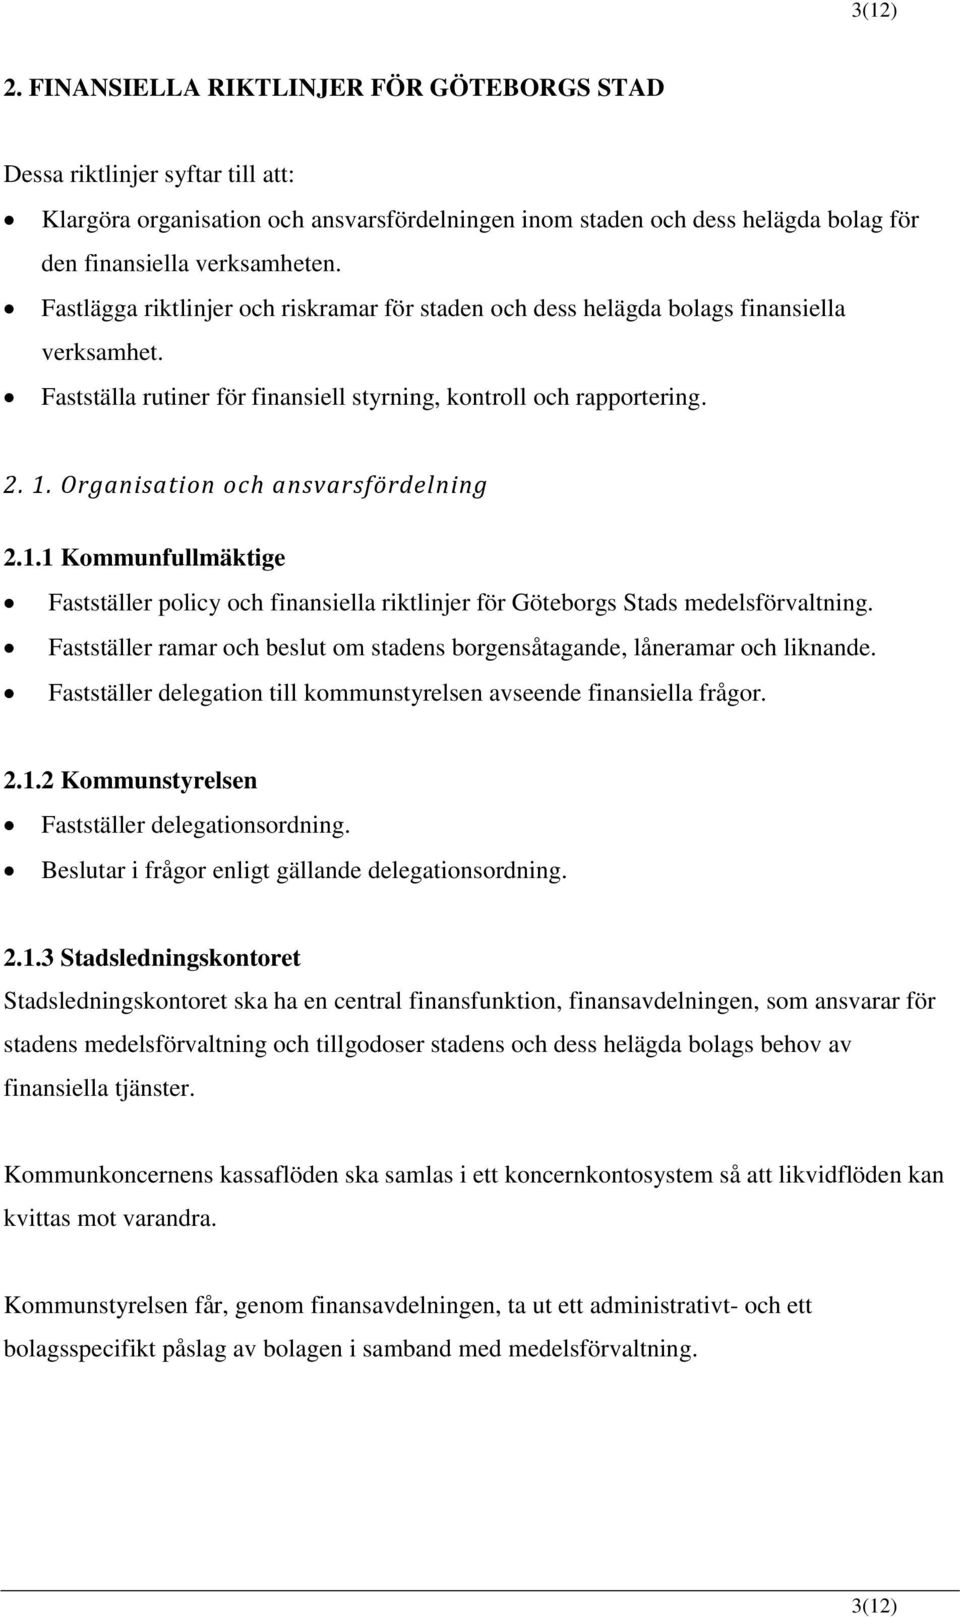 Organisation och ansvarsfördelning 2.1.1 Kommunfullmäktige Fastställer policy och finansiella riktlinjer för Göteborgs Stads medelsförvaltning.